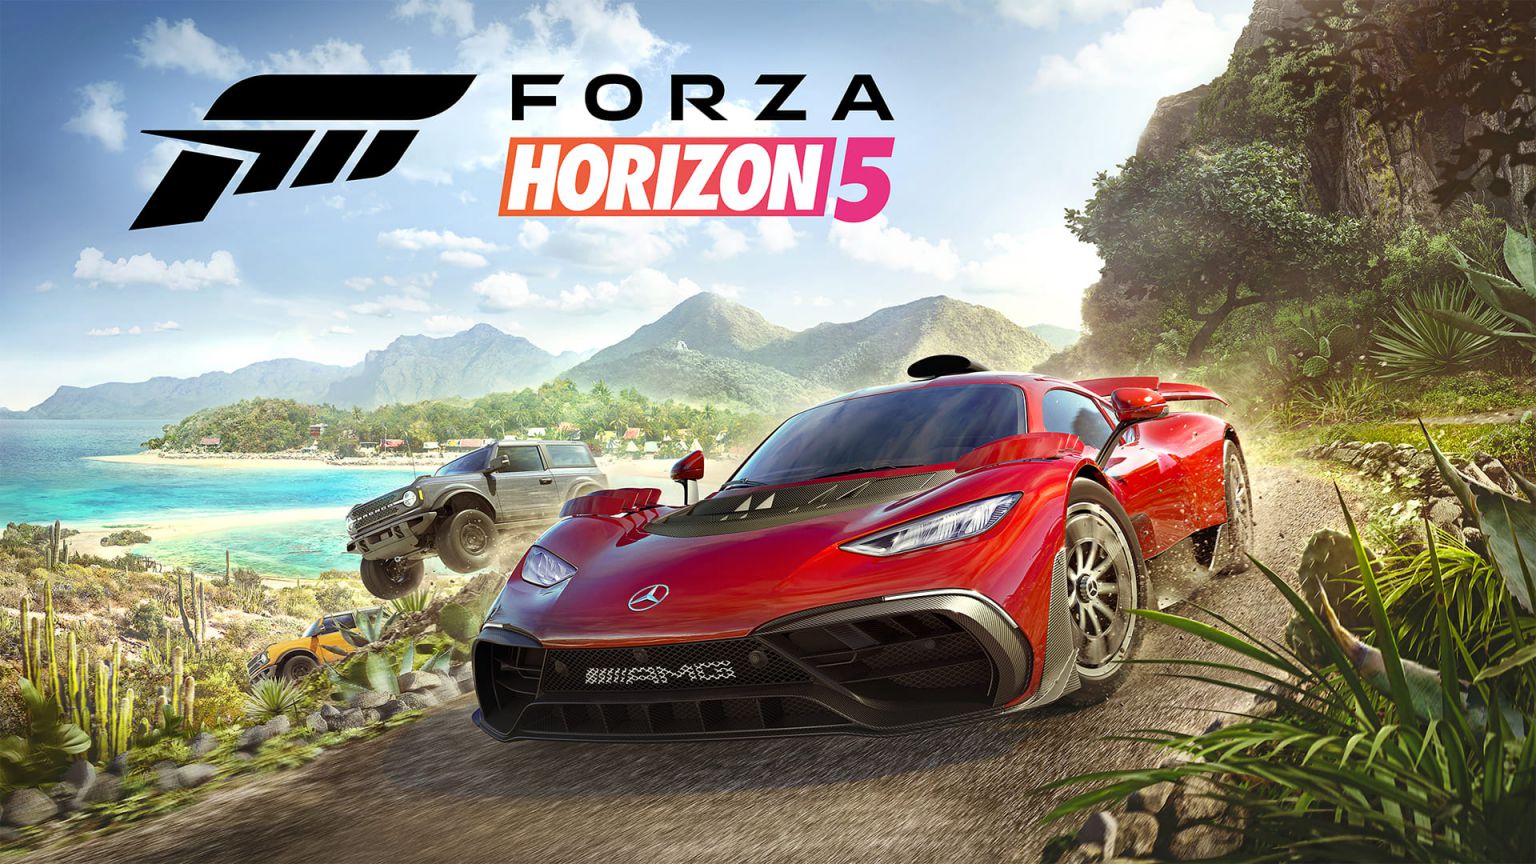 Si no has tenido oportunidad de probar Forza Horizon 5 en Xbox, es el mejor momento para hacerlo aprovechando esta promo.